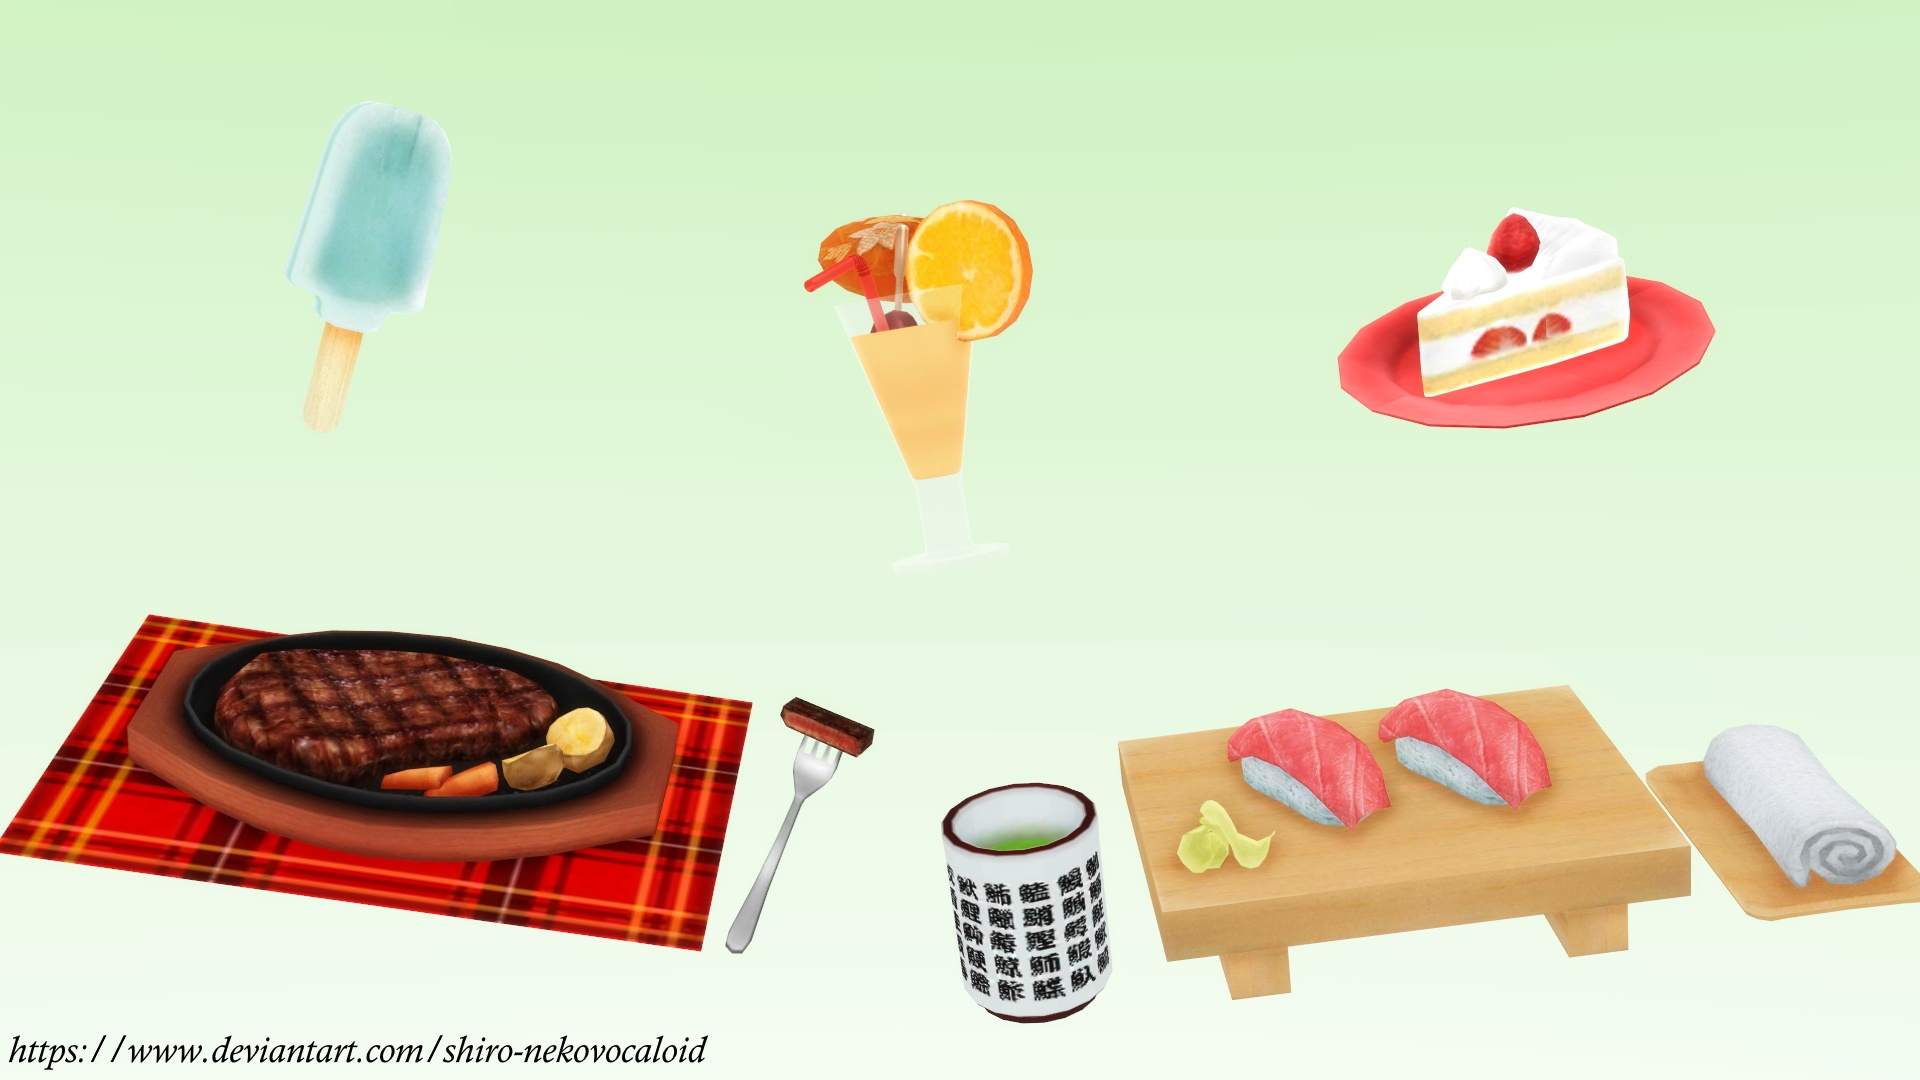 Sushi set pack! MMD download by Hack-Girl on DeviantArt